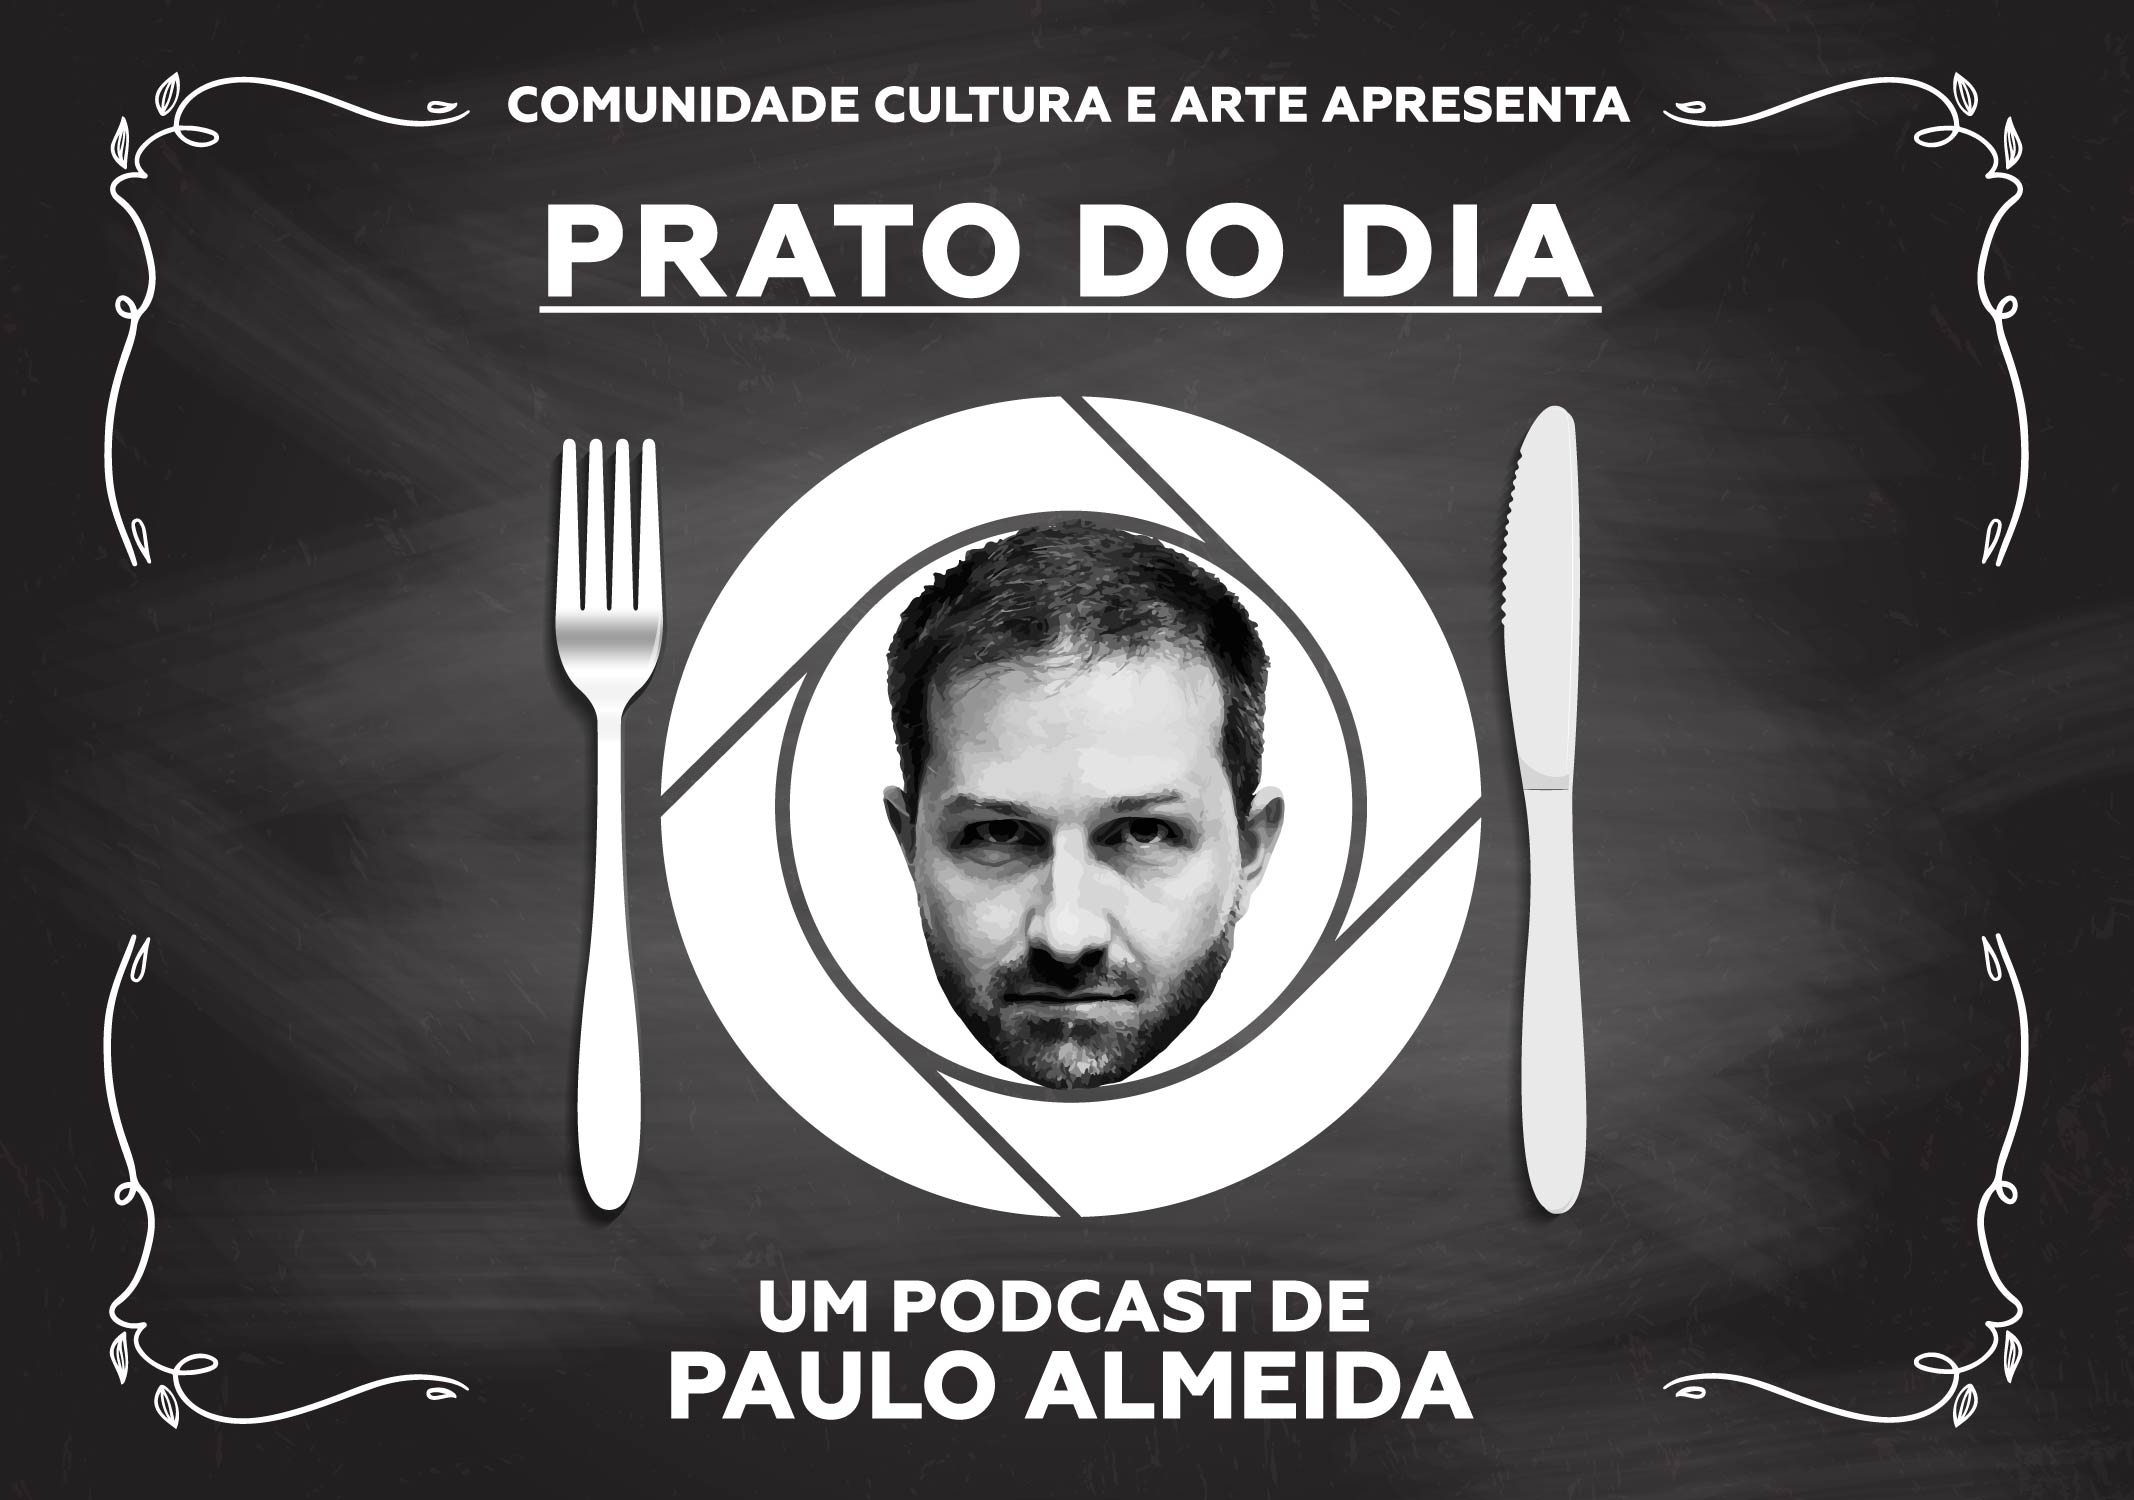 Paulo Almeida lança podcast diário sobre o “Prato do dia”, no panorama nacional e internacional